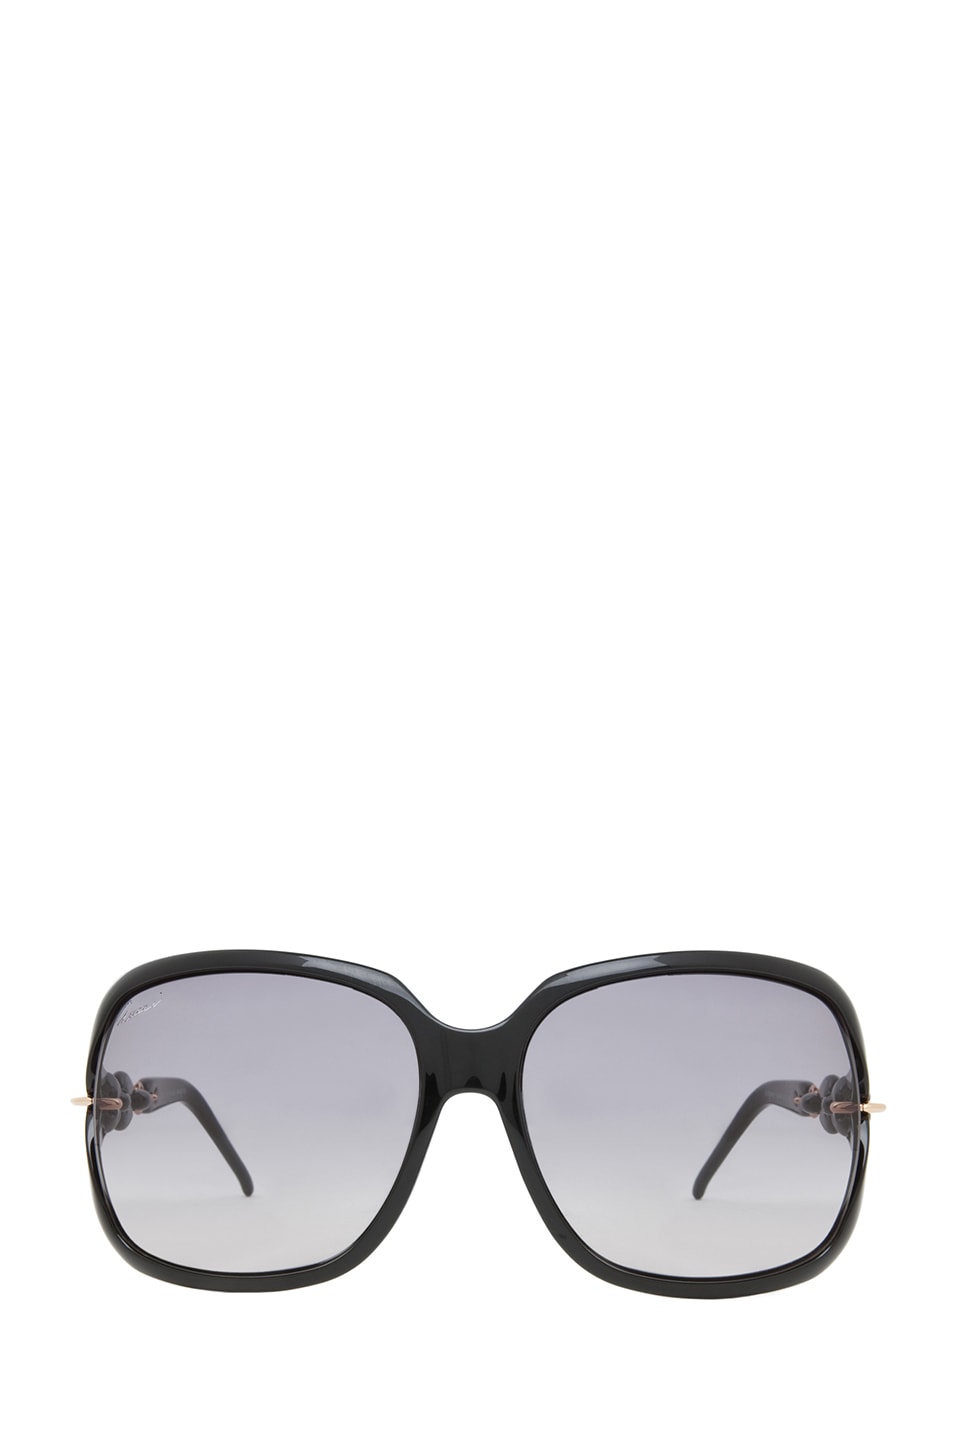 Image 1 of Gucci 3584 Sunglasses in Shiny Black & Dark Gray Ochre